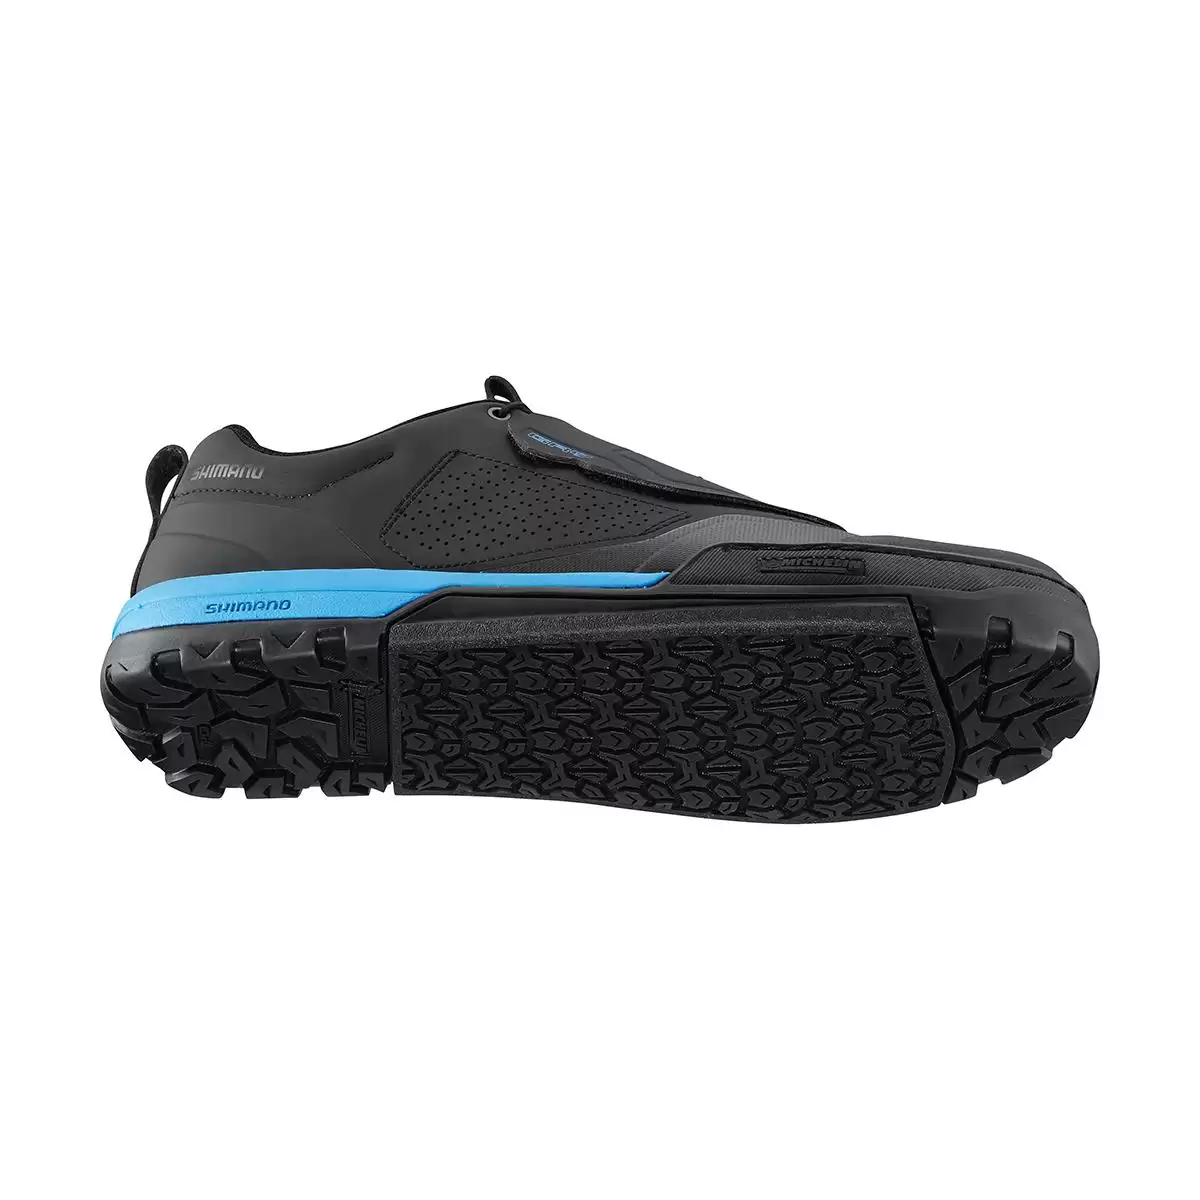 Sapatos baixos MTB GR901 preto/azul tamanho 38 #2